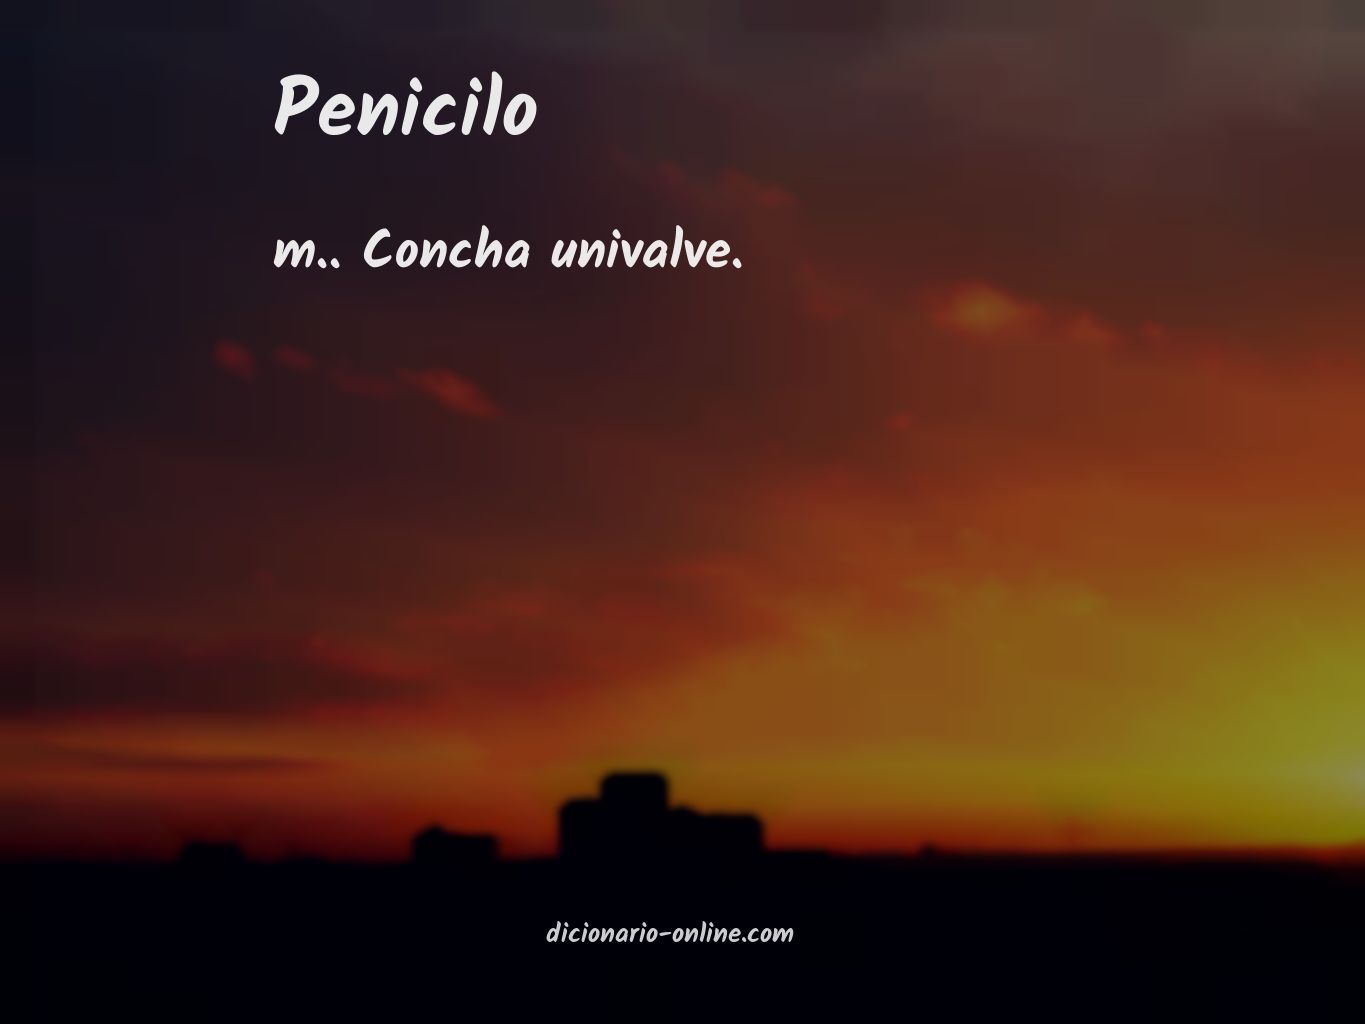 Significado de penicilo